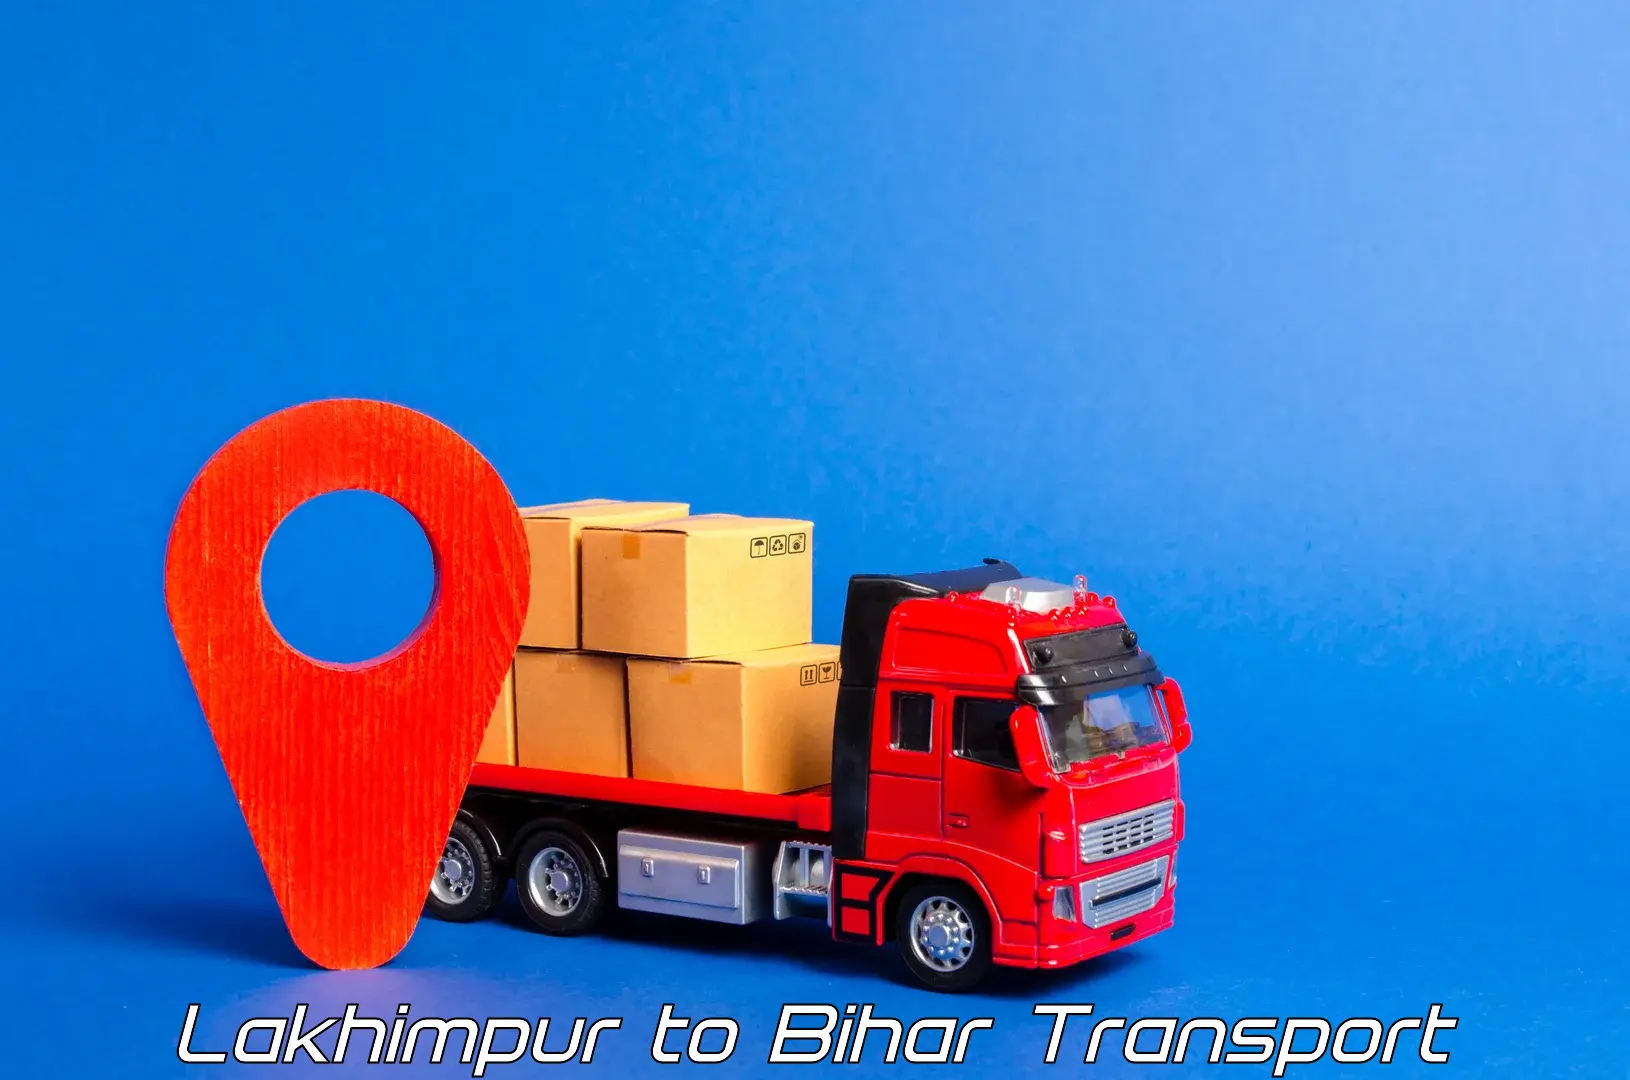 Shipping partner Lakhimpur to Bihar